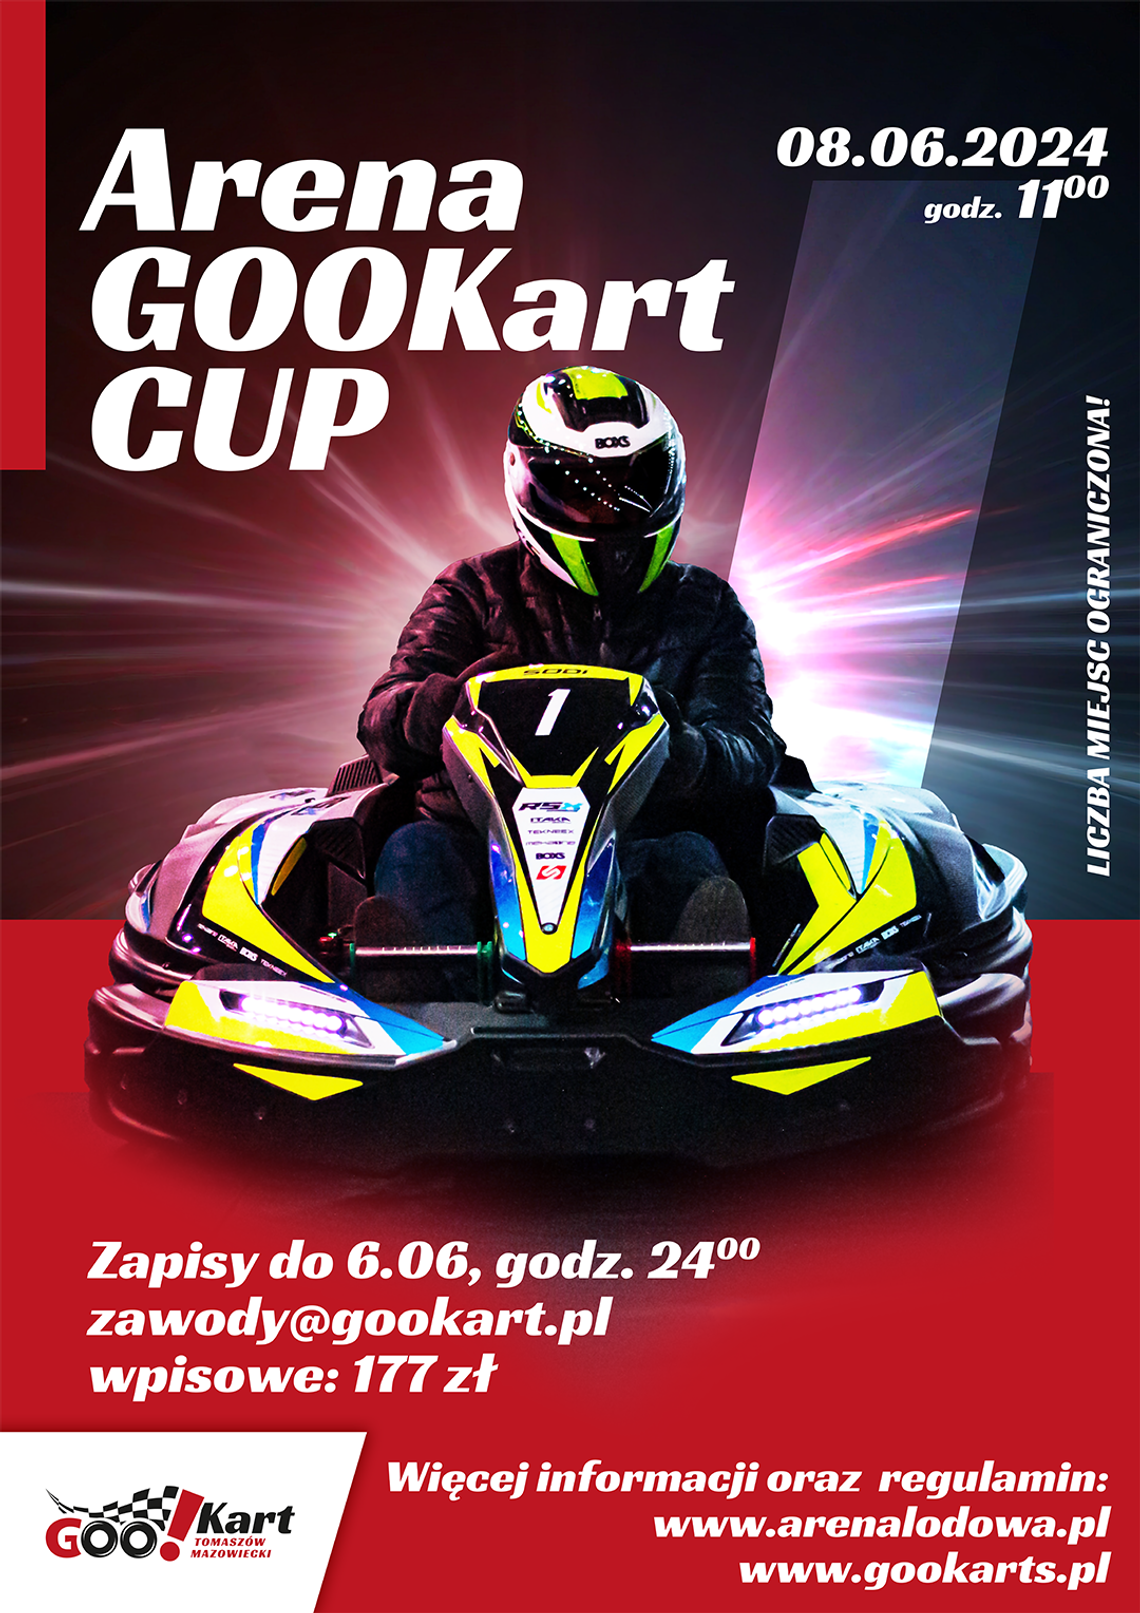 ARENA GOOKART CUP